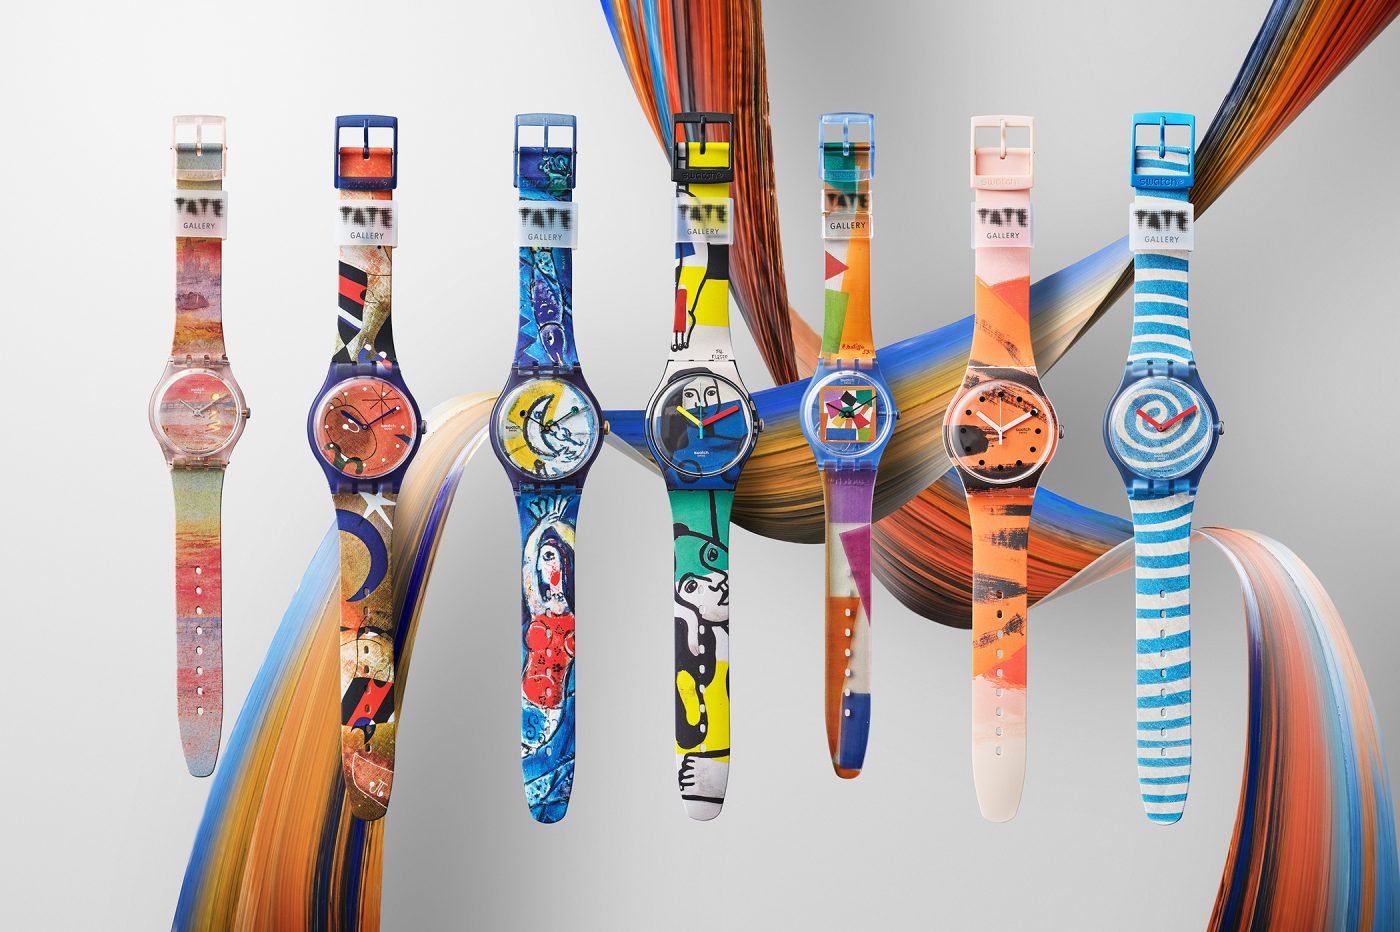 Swatch x Tate – kolekcja zegarków inspirowana pracami znanych artystów [dostępność, cena]